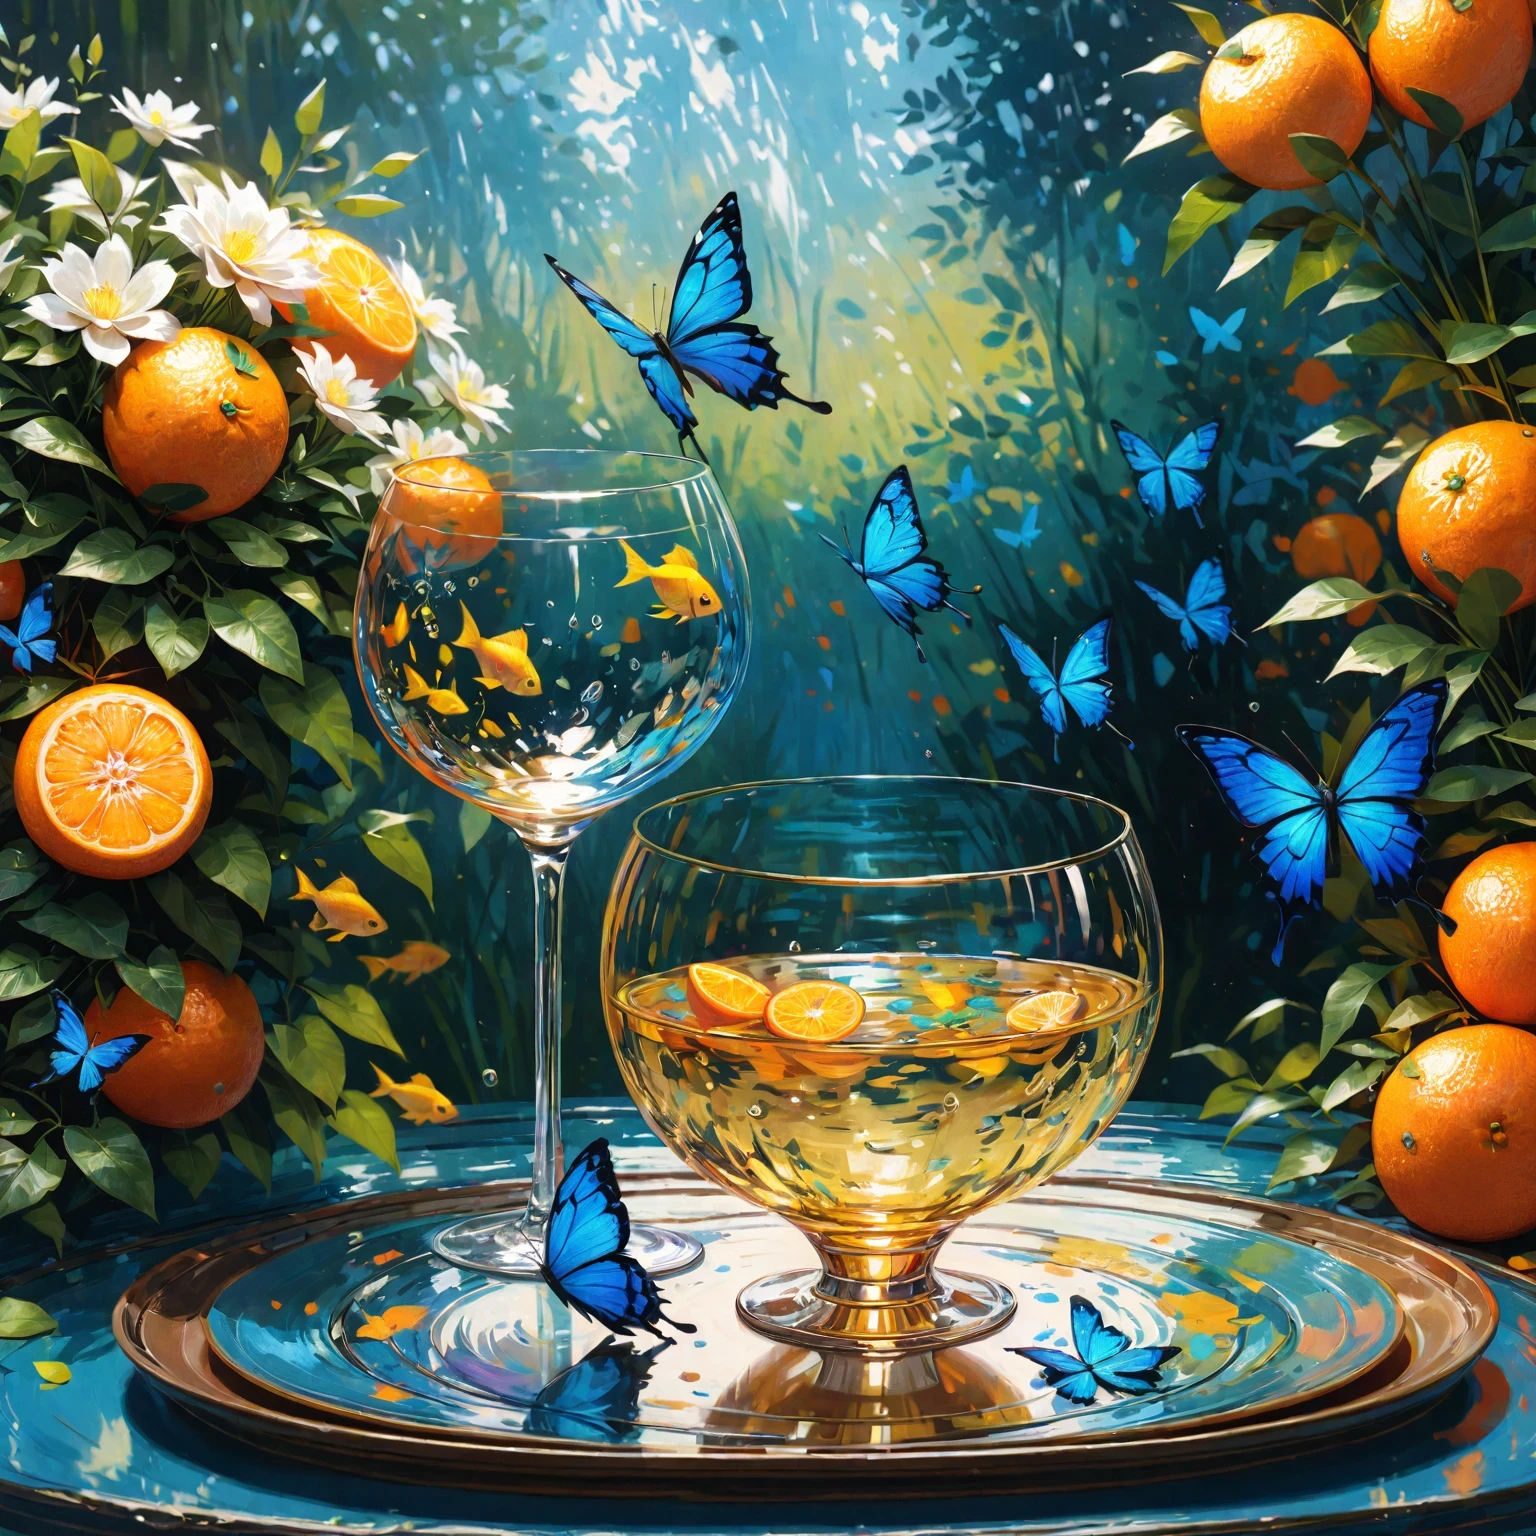 DIY31,A 活気のある acrylic painting featuring a blue butterfly dancing among the lush flowers of a garden, 透明なガラスのコップの中で自由に泳ぐ金魚. ガラスを載せた皿の細かい模様, 青い蝶の繊細な斑点のある羽がはっきりと見える. 印象派スタイルの静かな庭園の背景が静けさを高めます, 金魚が鮮やかな色彩とエネルギーをシーンに加えます. 青い蝶と金魚の調和のとれた相互作用, ガラスカップからの微妙な光の反射が深みと立体感を生み出します. 豊かなブルースのパレット, オレンジ, 黄色が混ざり合う, 繊細なアクリルの筆遣いで精巧に表現された. 高解像度, 静けさと楽しい雰囲気を醸し出す高品質のアートワーク, 超リアル, 詳細, カラフル, 活気のある, 静かな庭園, クロード・モネのような芸術家による, 活気のある colors, ハイパーリアリズム, ハイダイナミックレンジ, フォトリアリズム.
